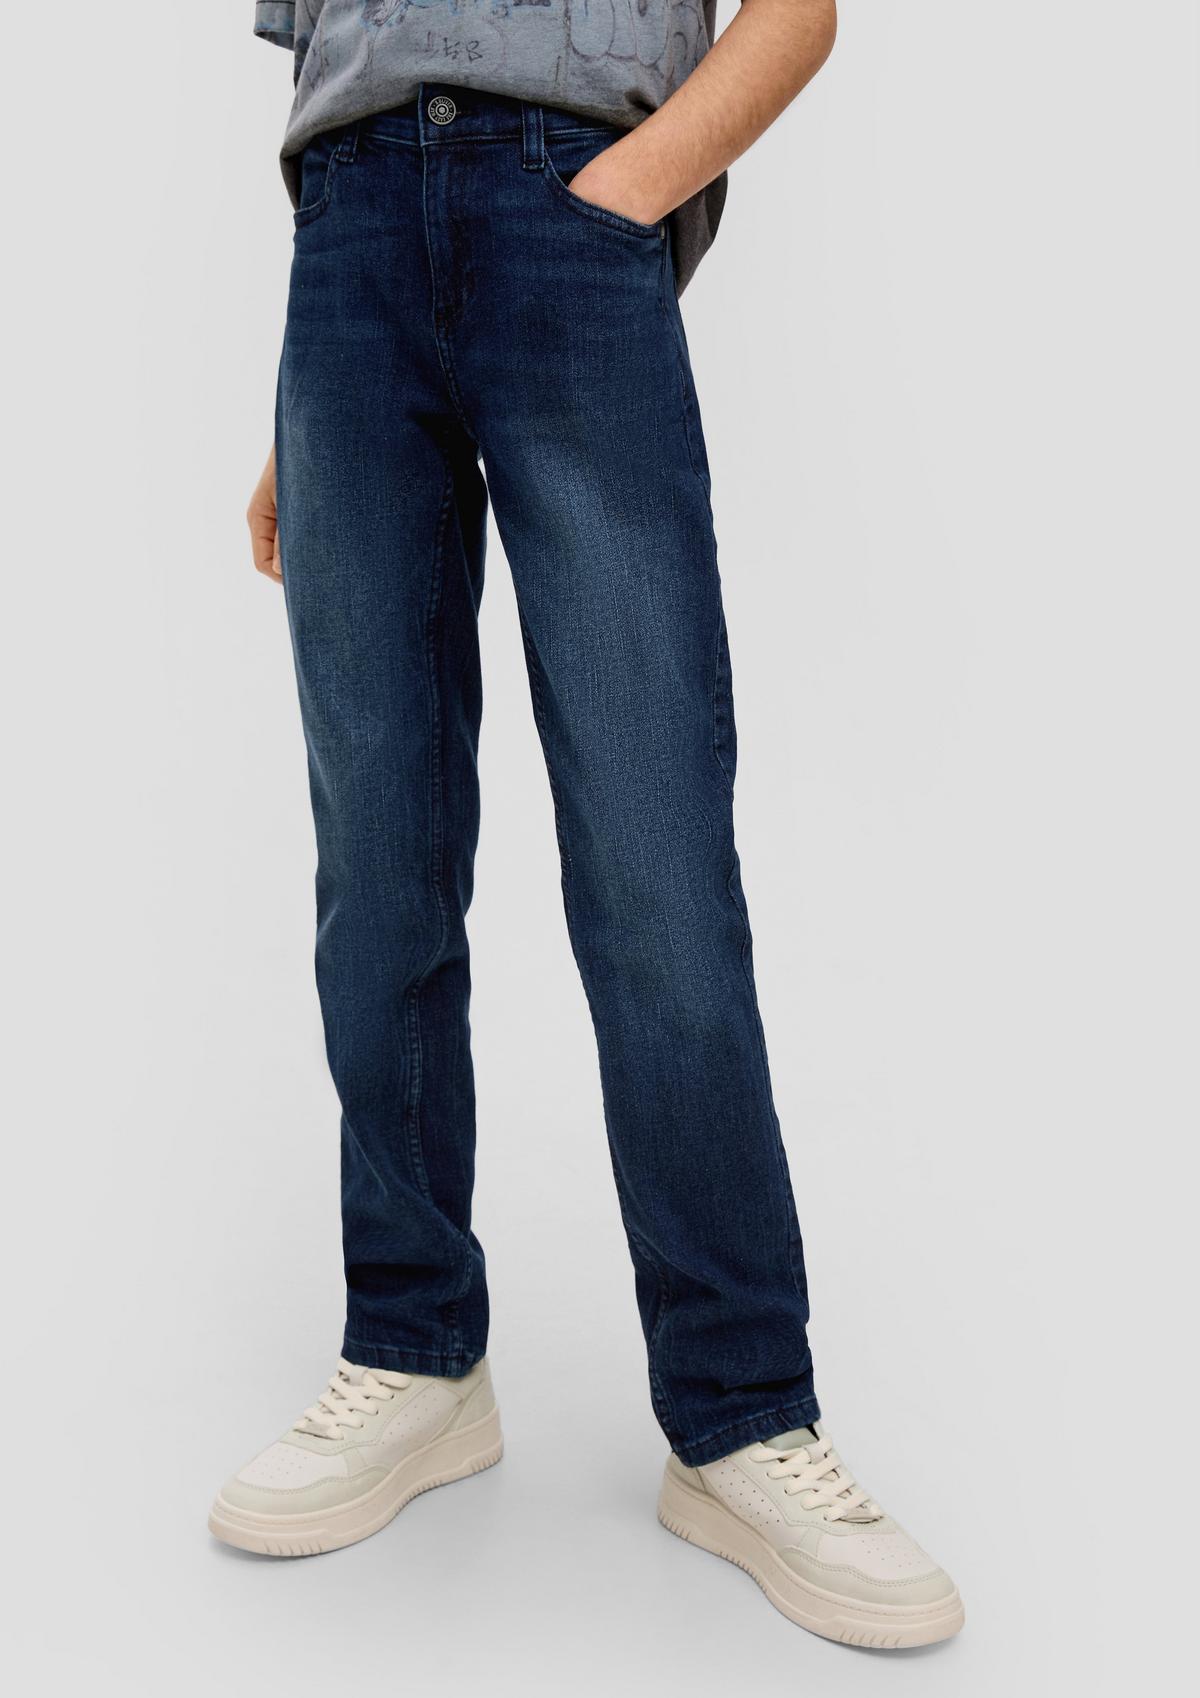 s.Oliver Jeans Seattle / Regular Fit / Mid Rise / Slm Leg